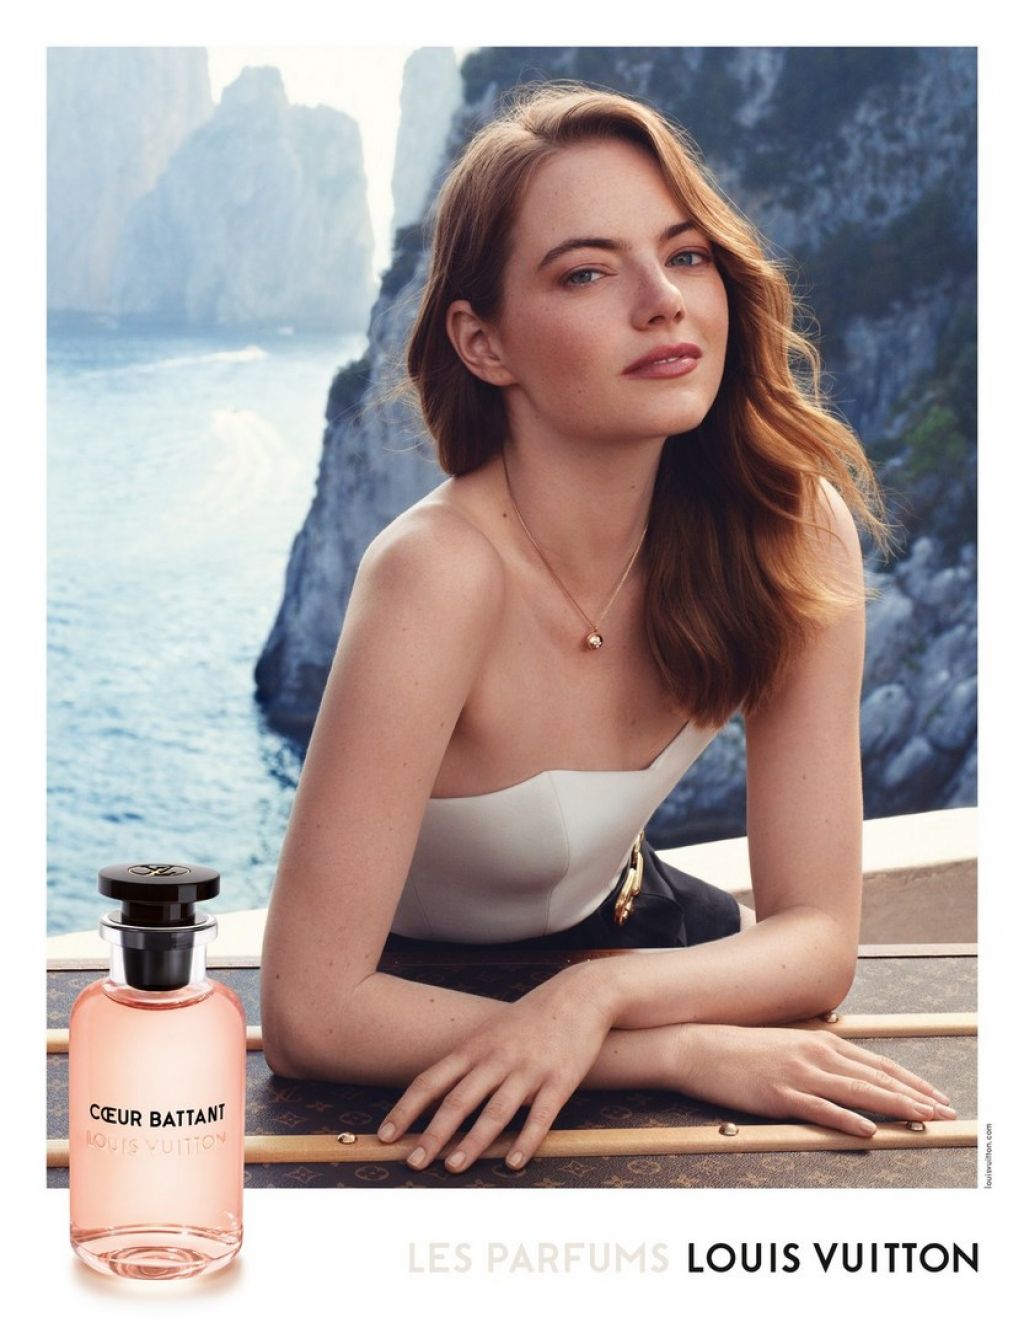 Emma Stone Cœur Battant Fragrance for Louis Vuitton 2019 Campaign (Part III) • CelebMafia